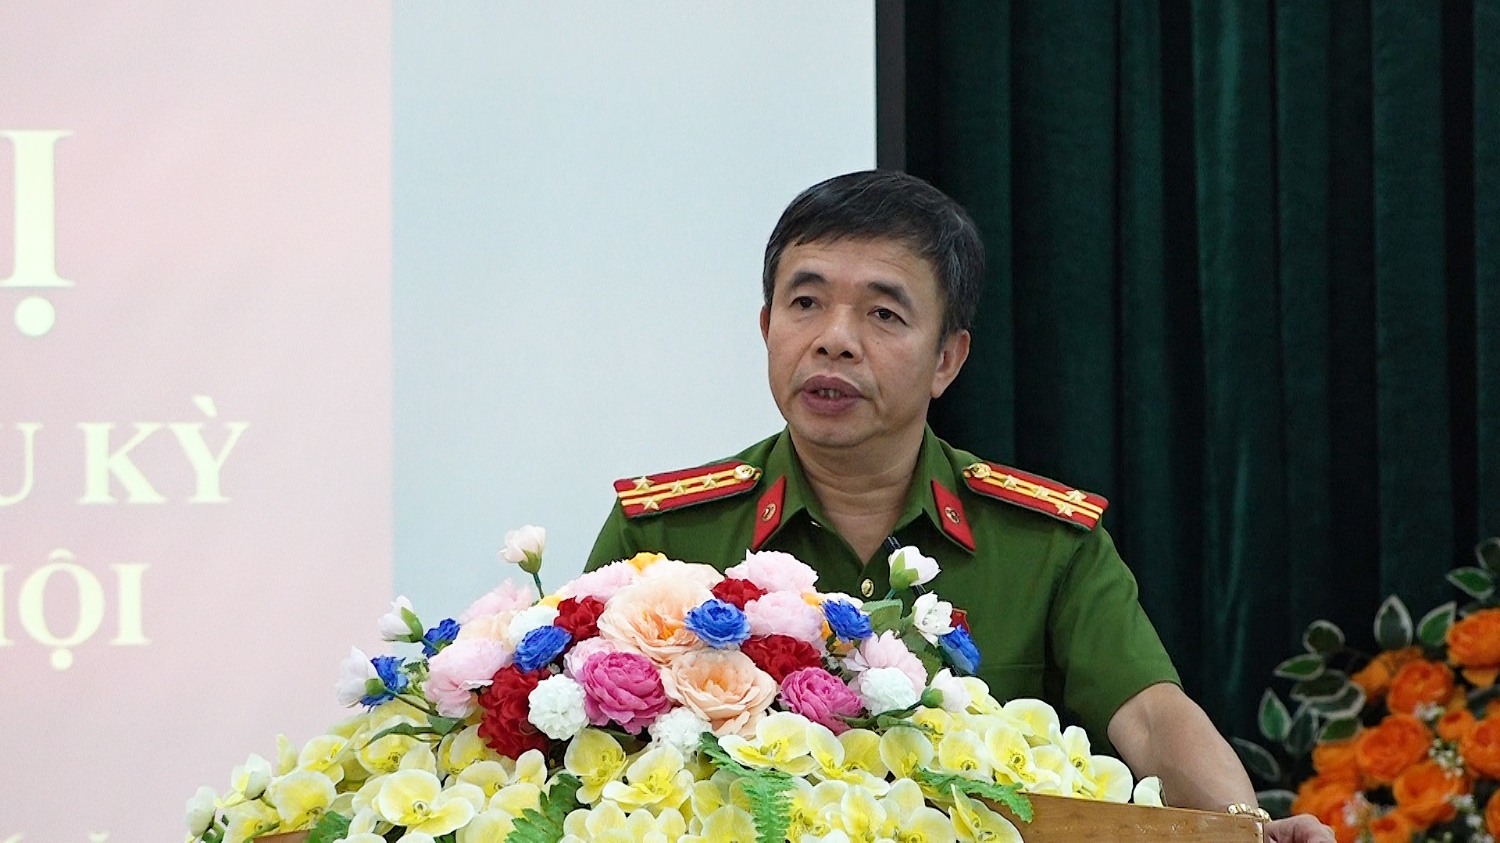 Đại tá Nguyễn Tiến Nam Viện trưởng Viện khoa học hình sự Bộ Công an đại biểu Quốc hội tỉnh Quảng Bình khóa XV giải đáp một số ý kiến tại buổi tiếp xúc